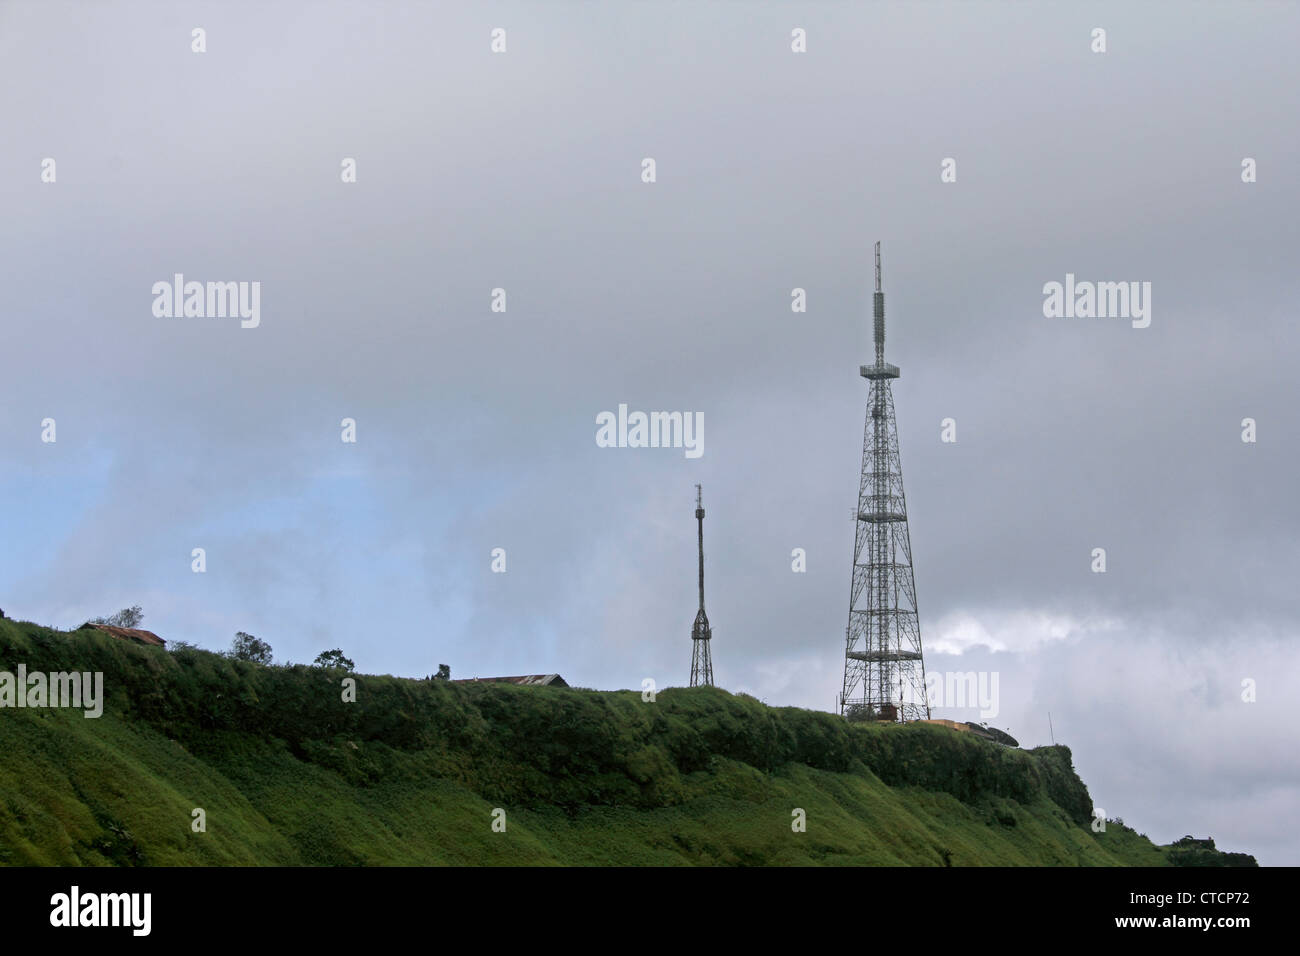 Einen Fernseher empfangen Signalsäule Sinhanghad Pune, Maharashtra, Indien Stockfoto